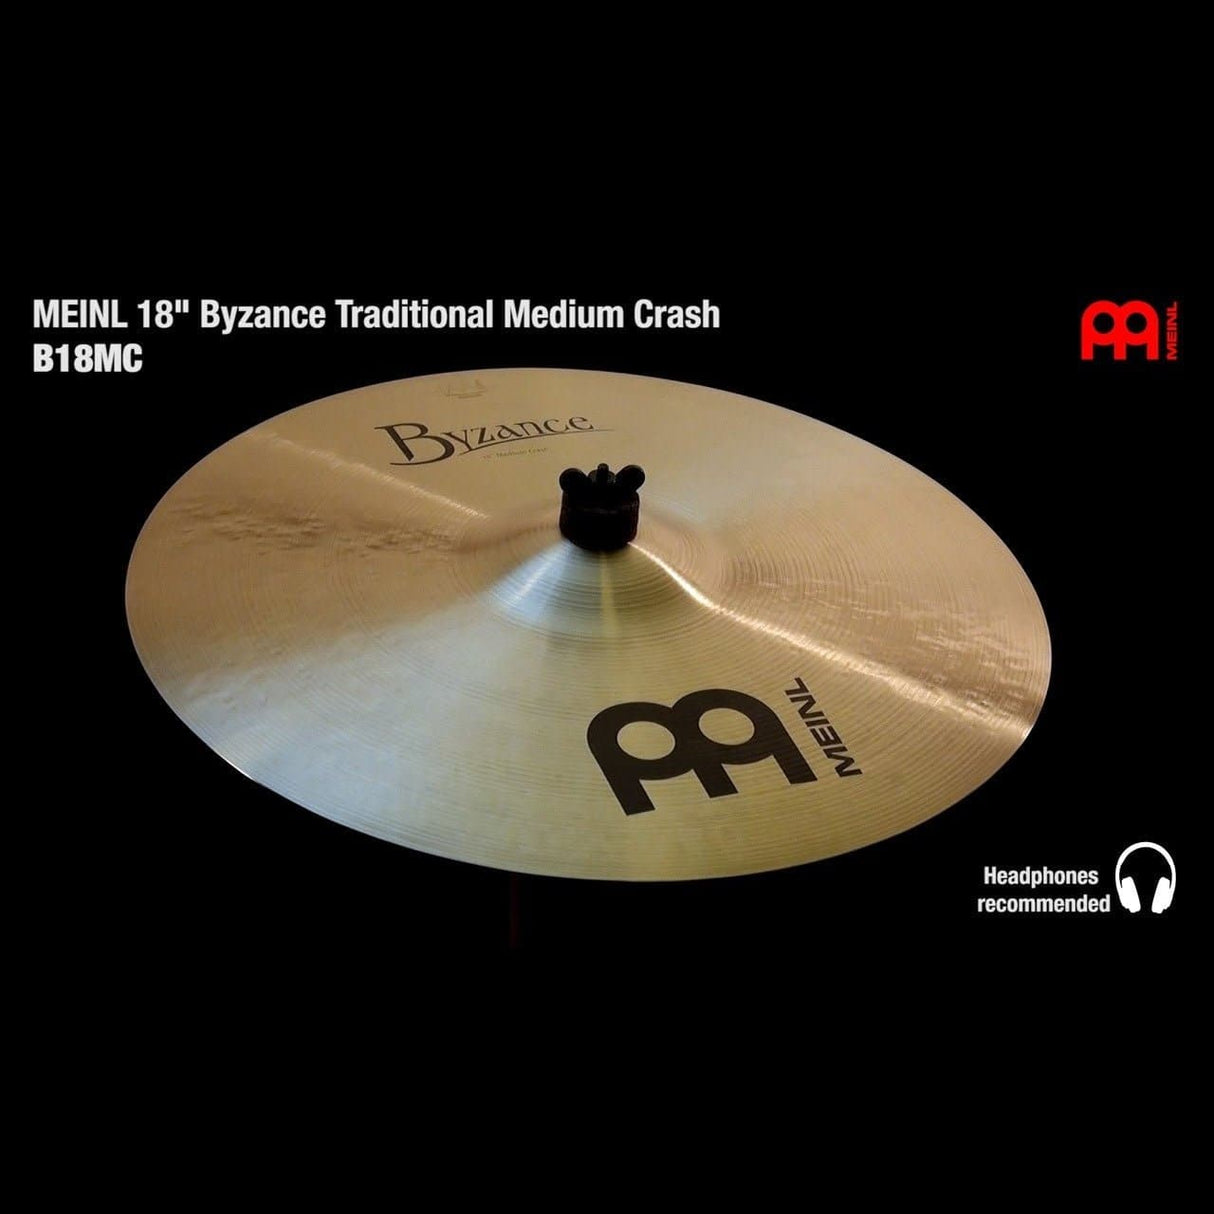 Meinl Byzance Traditional Medium Crash Cymbal 18